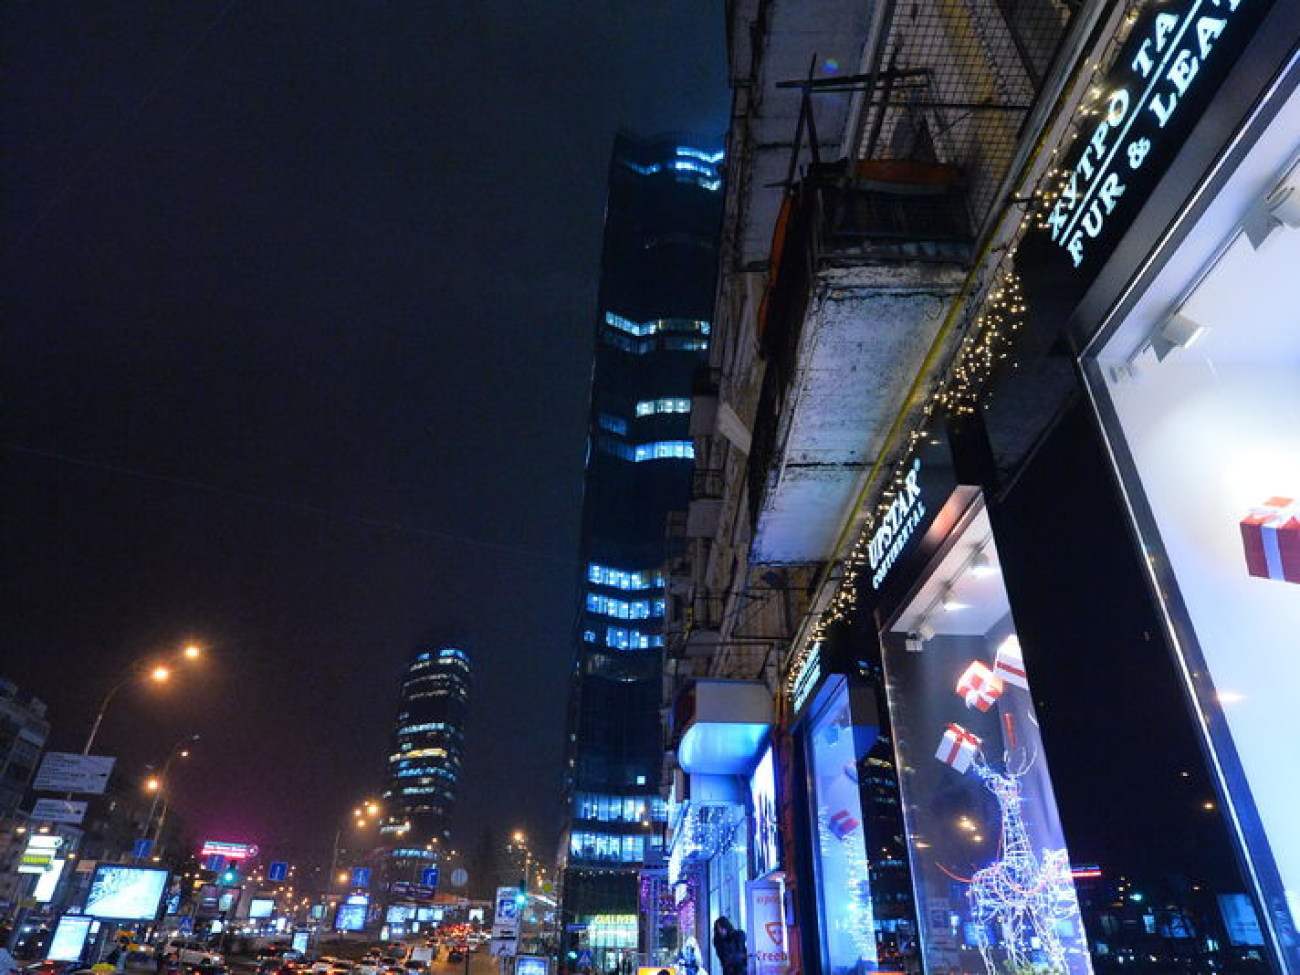 Две недели до Нового года: мрачные улицы и сияющие магазины